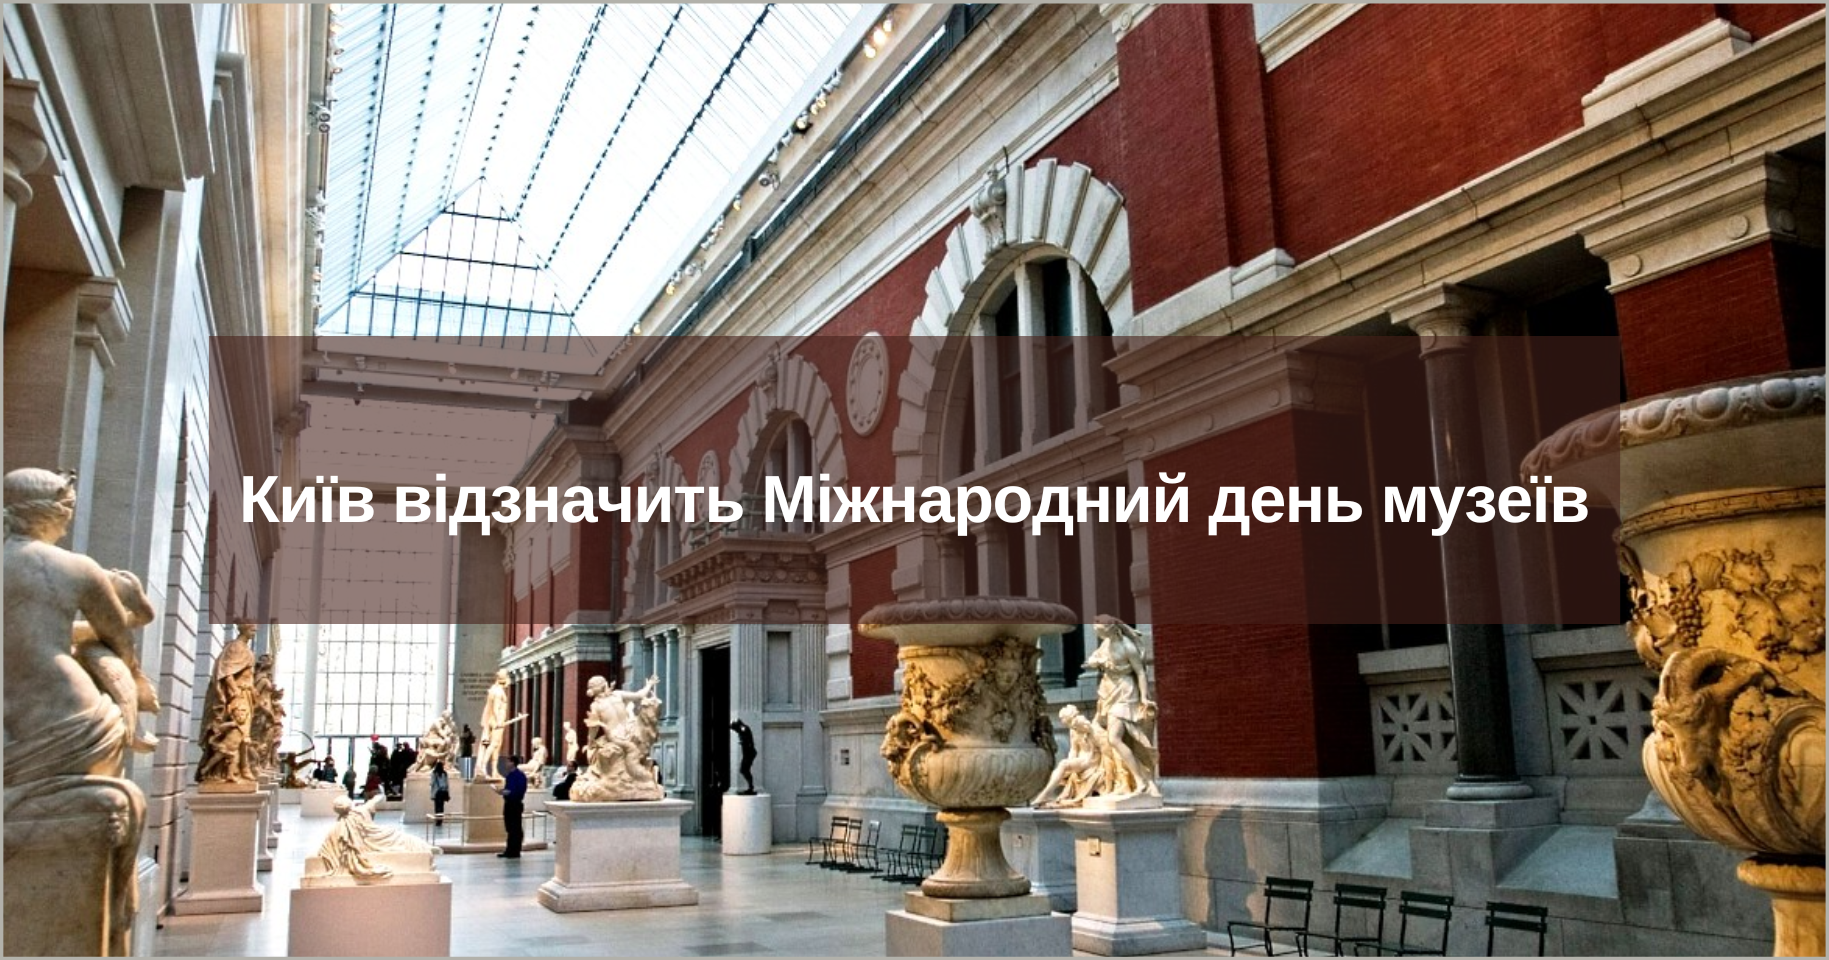 Київ відзначить Міжнародний день музеїв